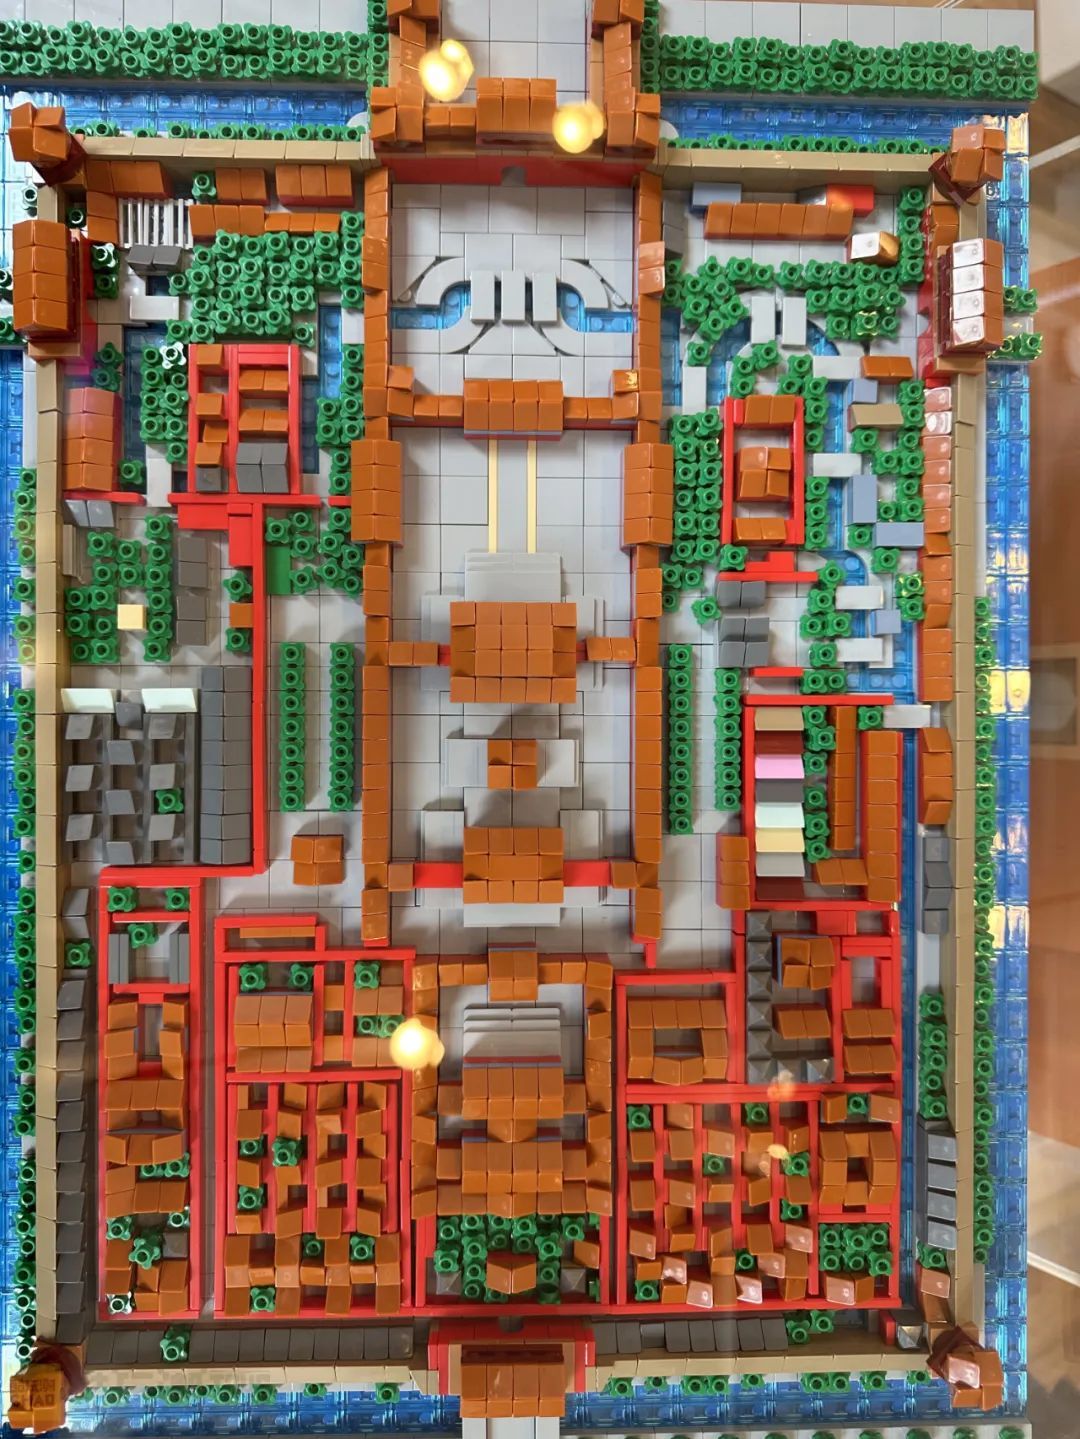 【周邊專區】美國國家博物館Brick City積木展——沃倫·埃爾斯莫爾個人作品展-第22張